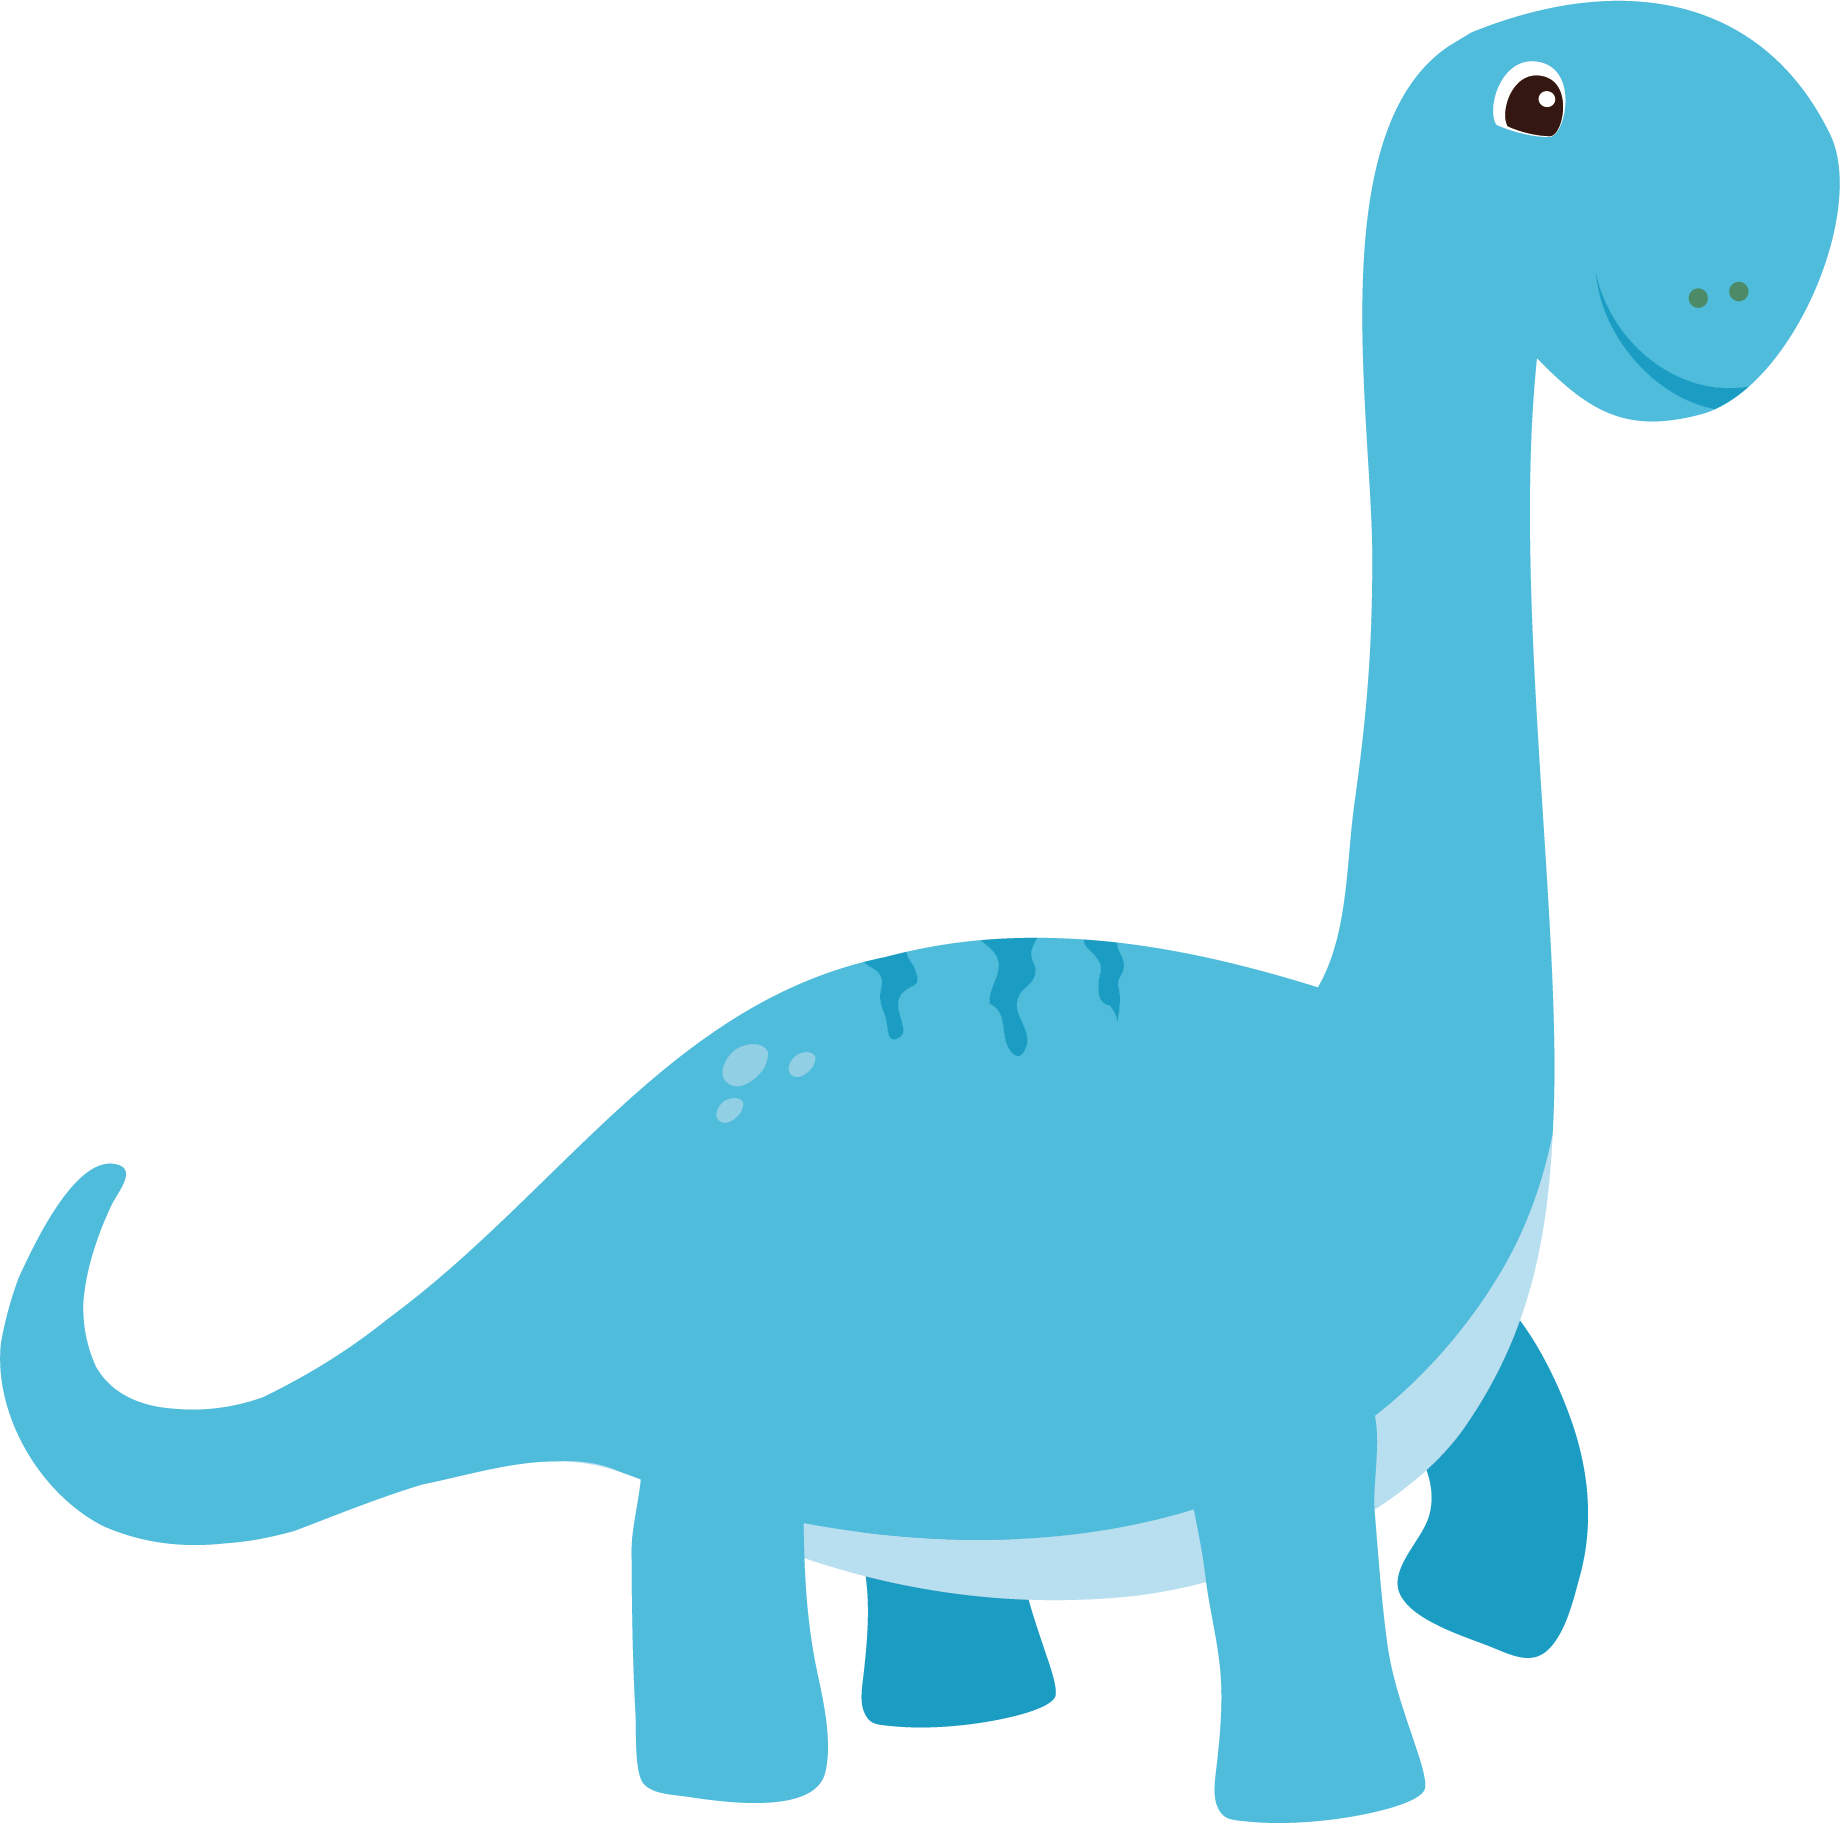 Dinosaur euclidean vector.